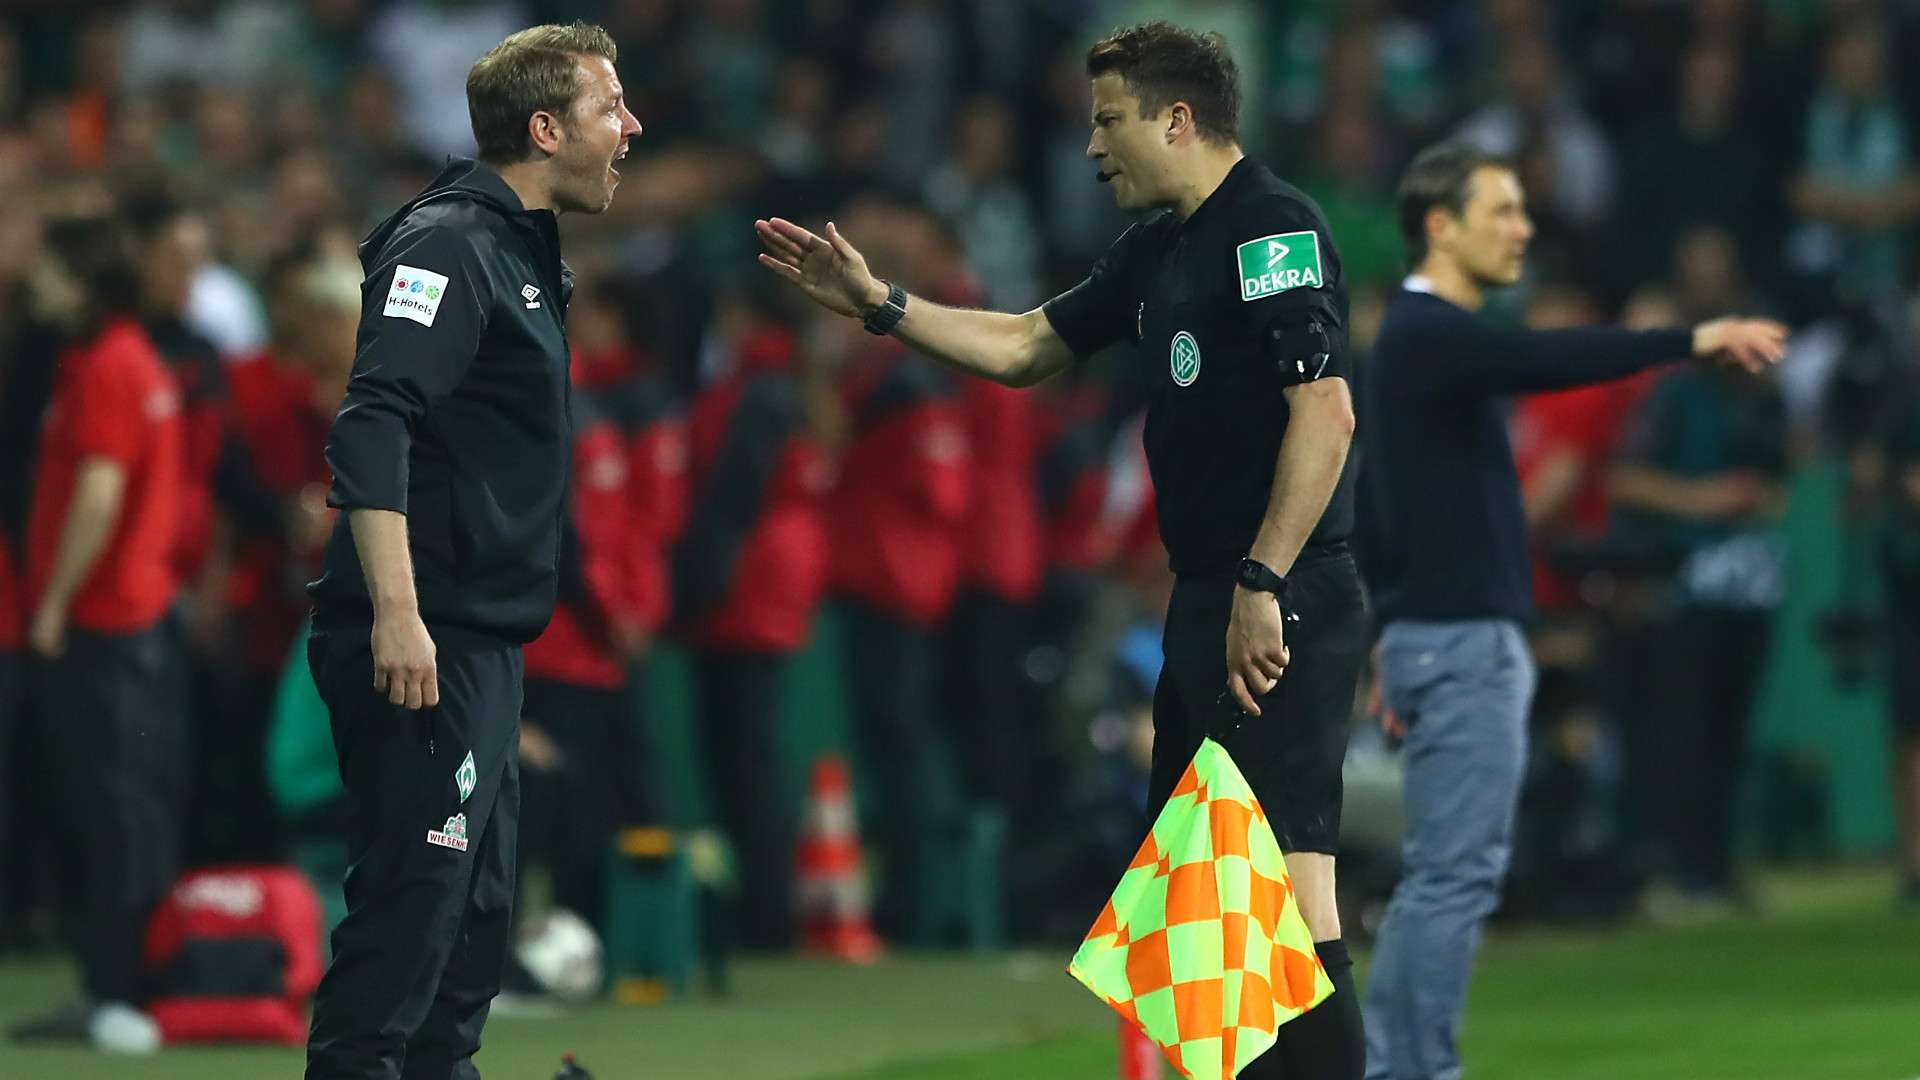 Florian Kohfeldt Werder Bremen 2019